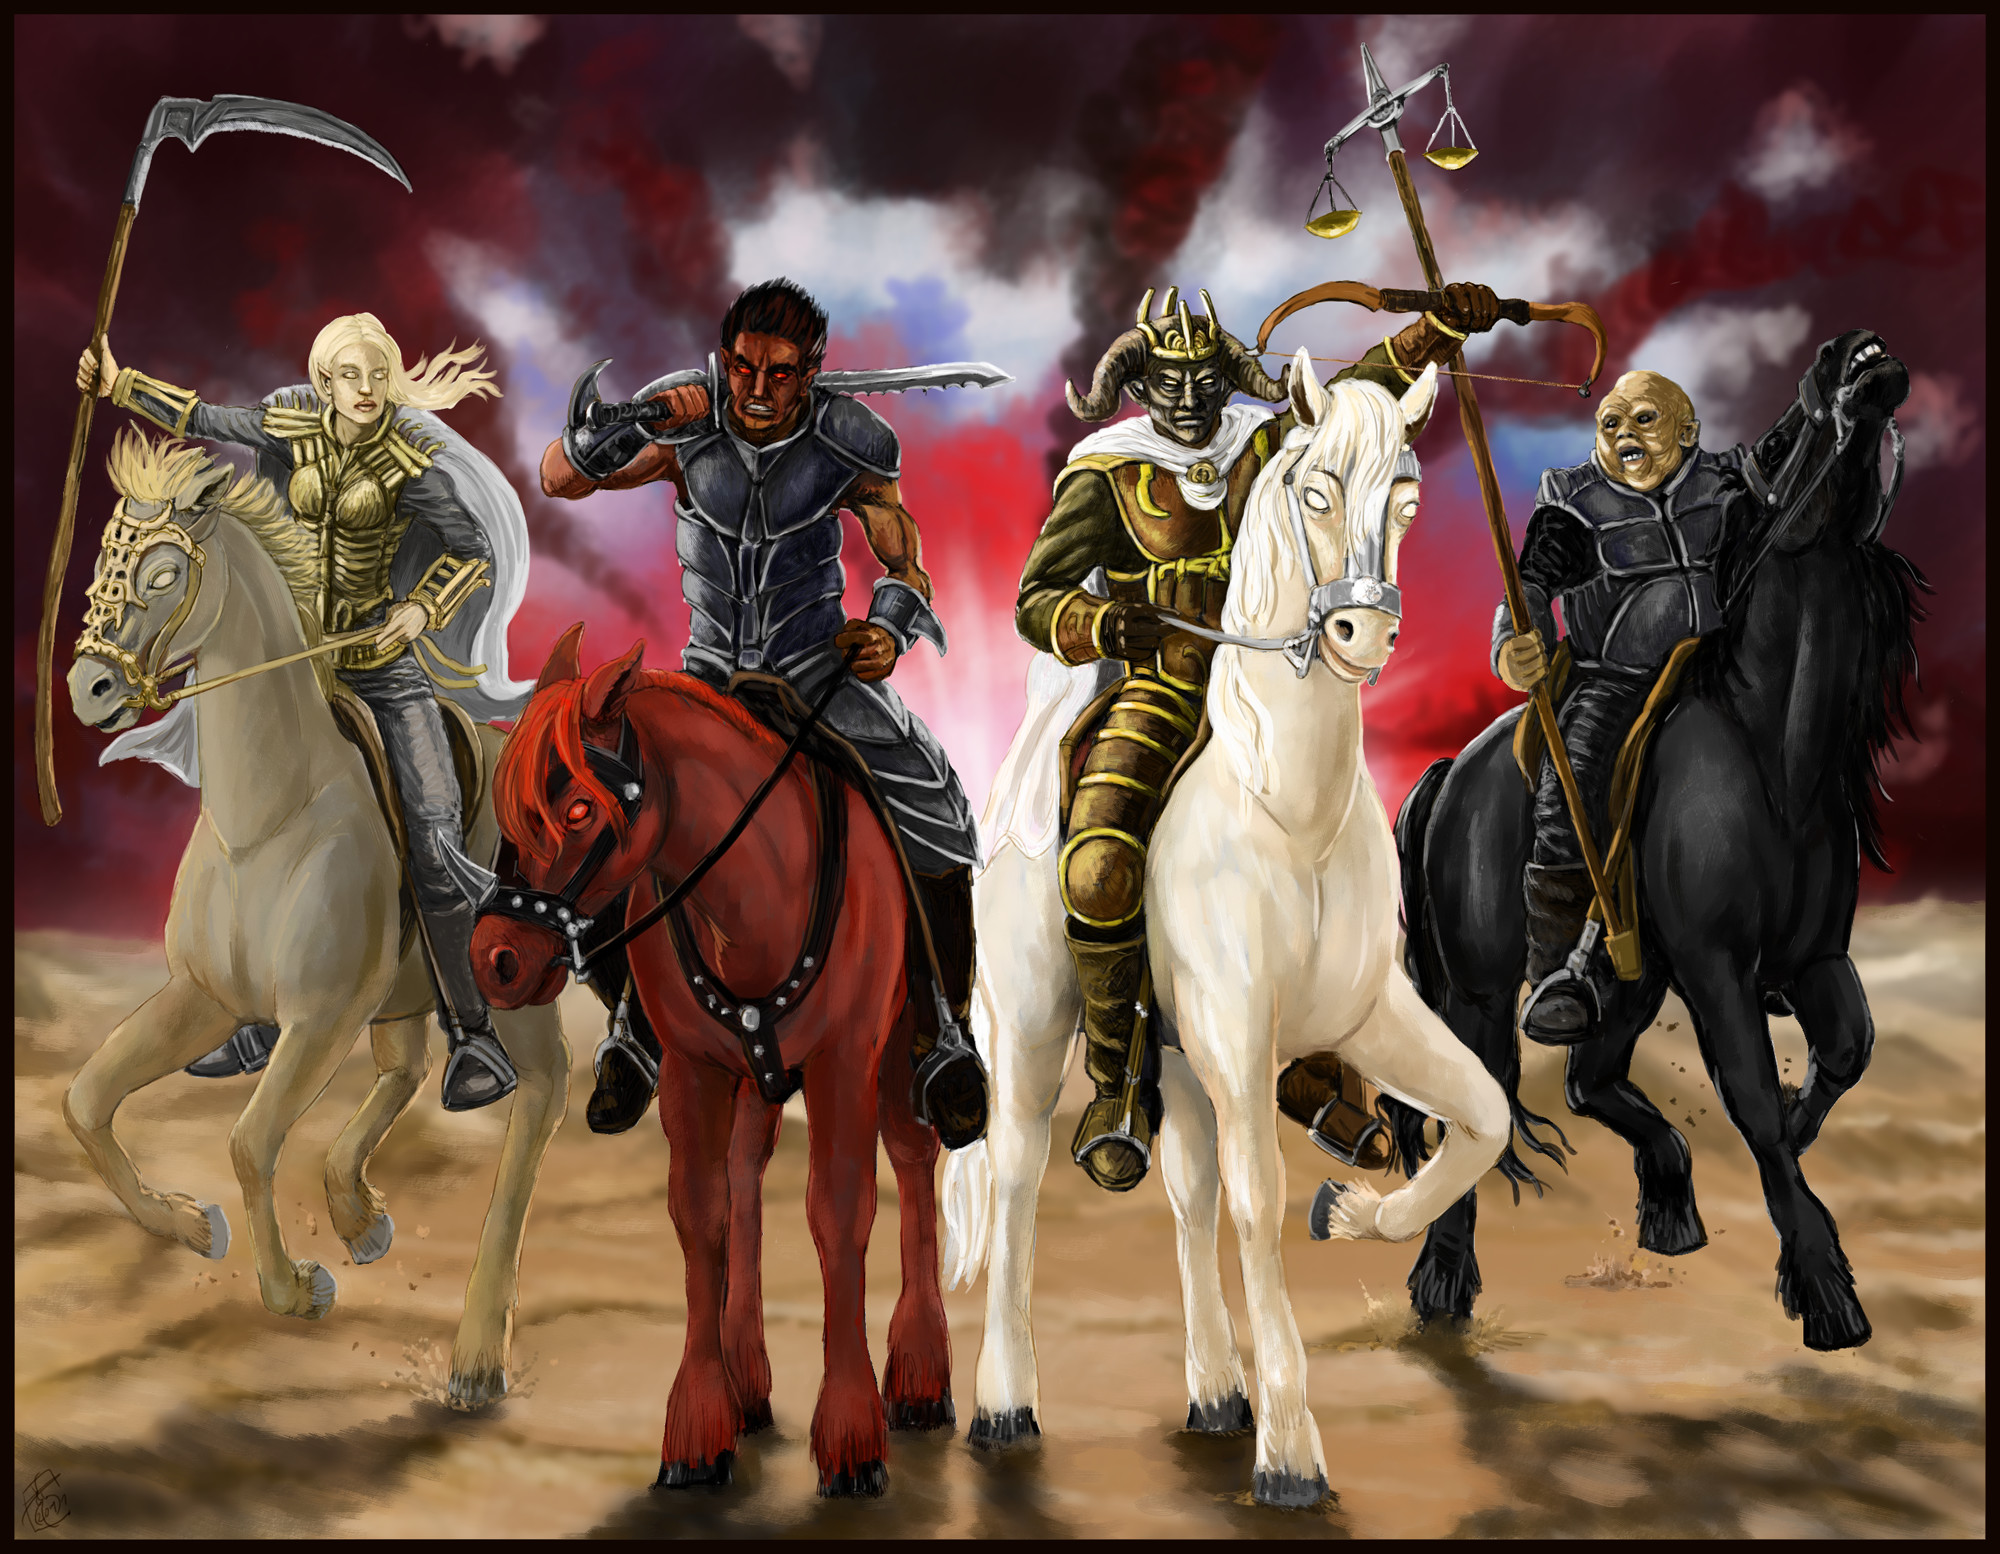 2000x1554 The Four Horsemen religion revelations dark horror horses reaper fantasy  art wallpaper |  | 37272 | WallpaperUP